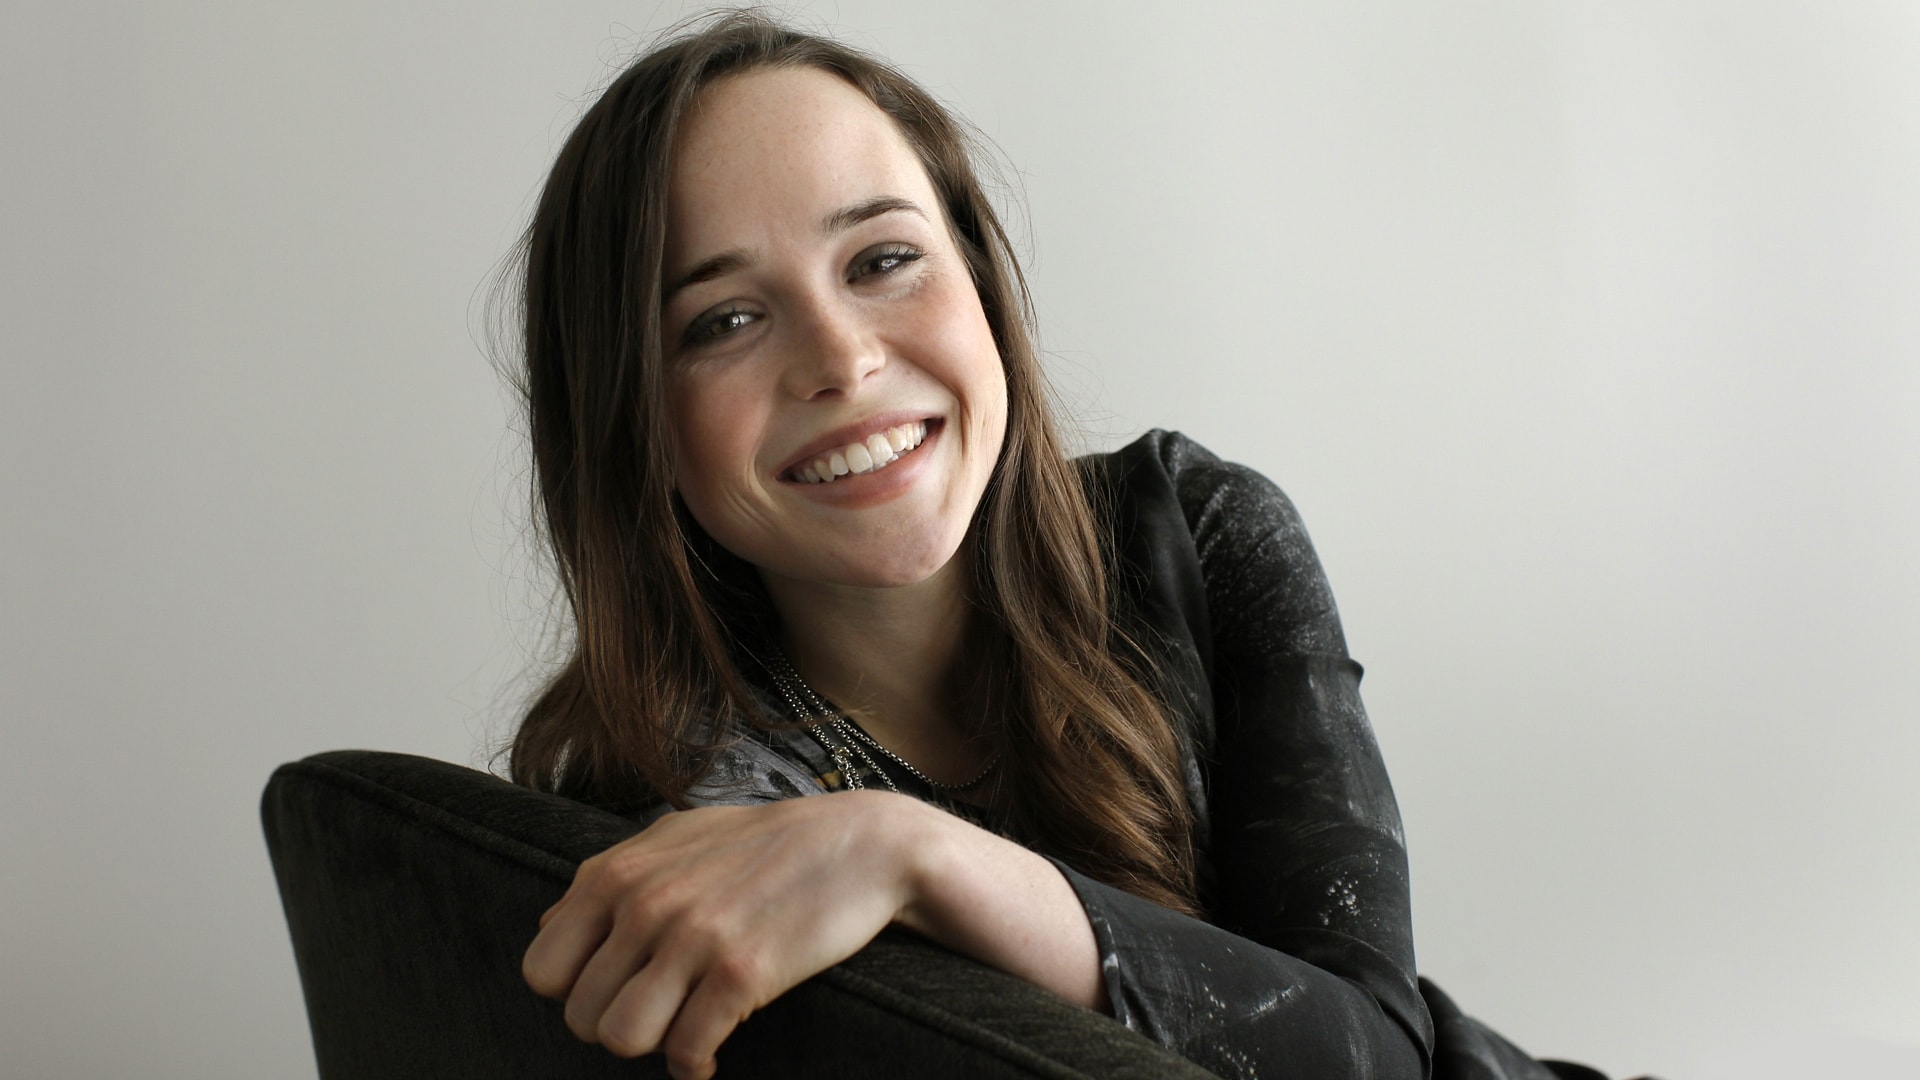 Ellen Page 2018 Wallpapers